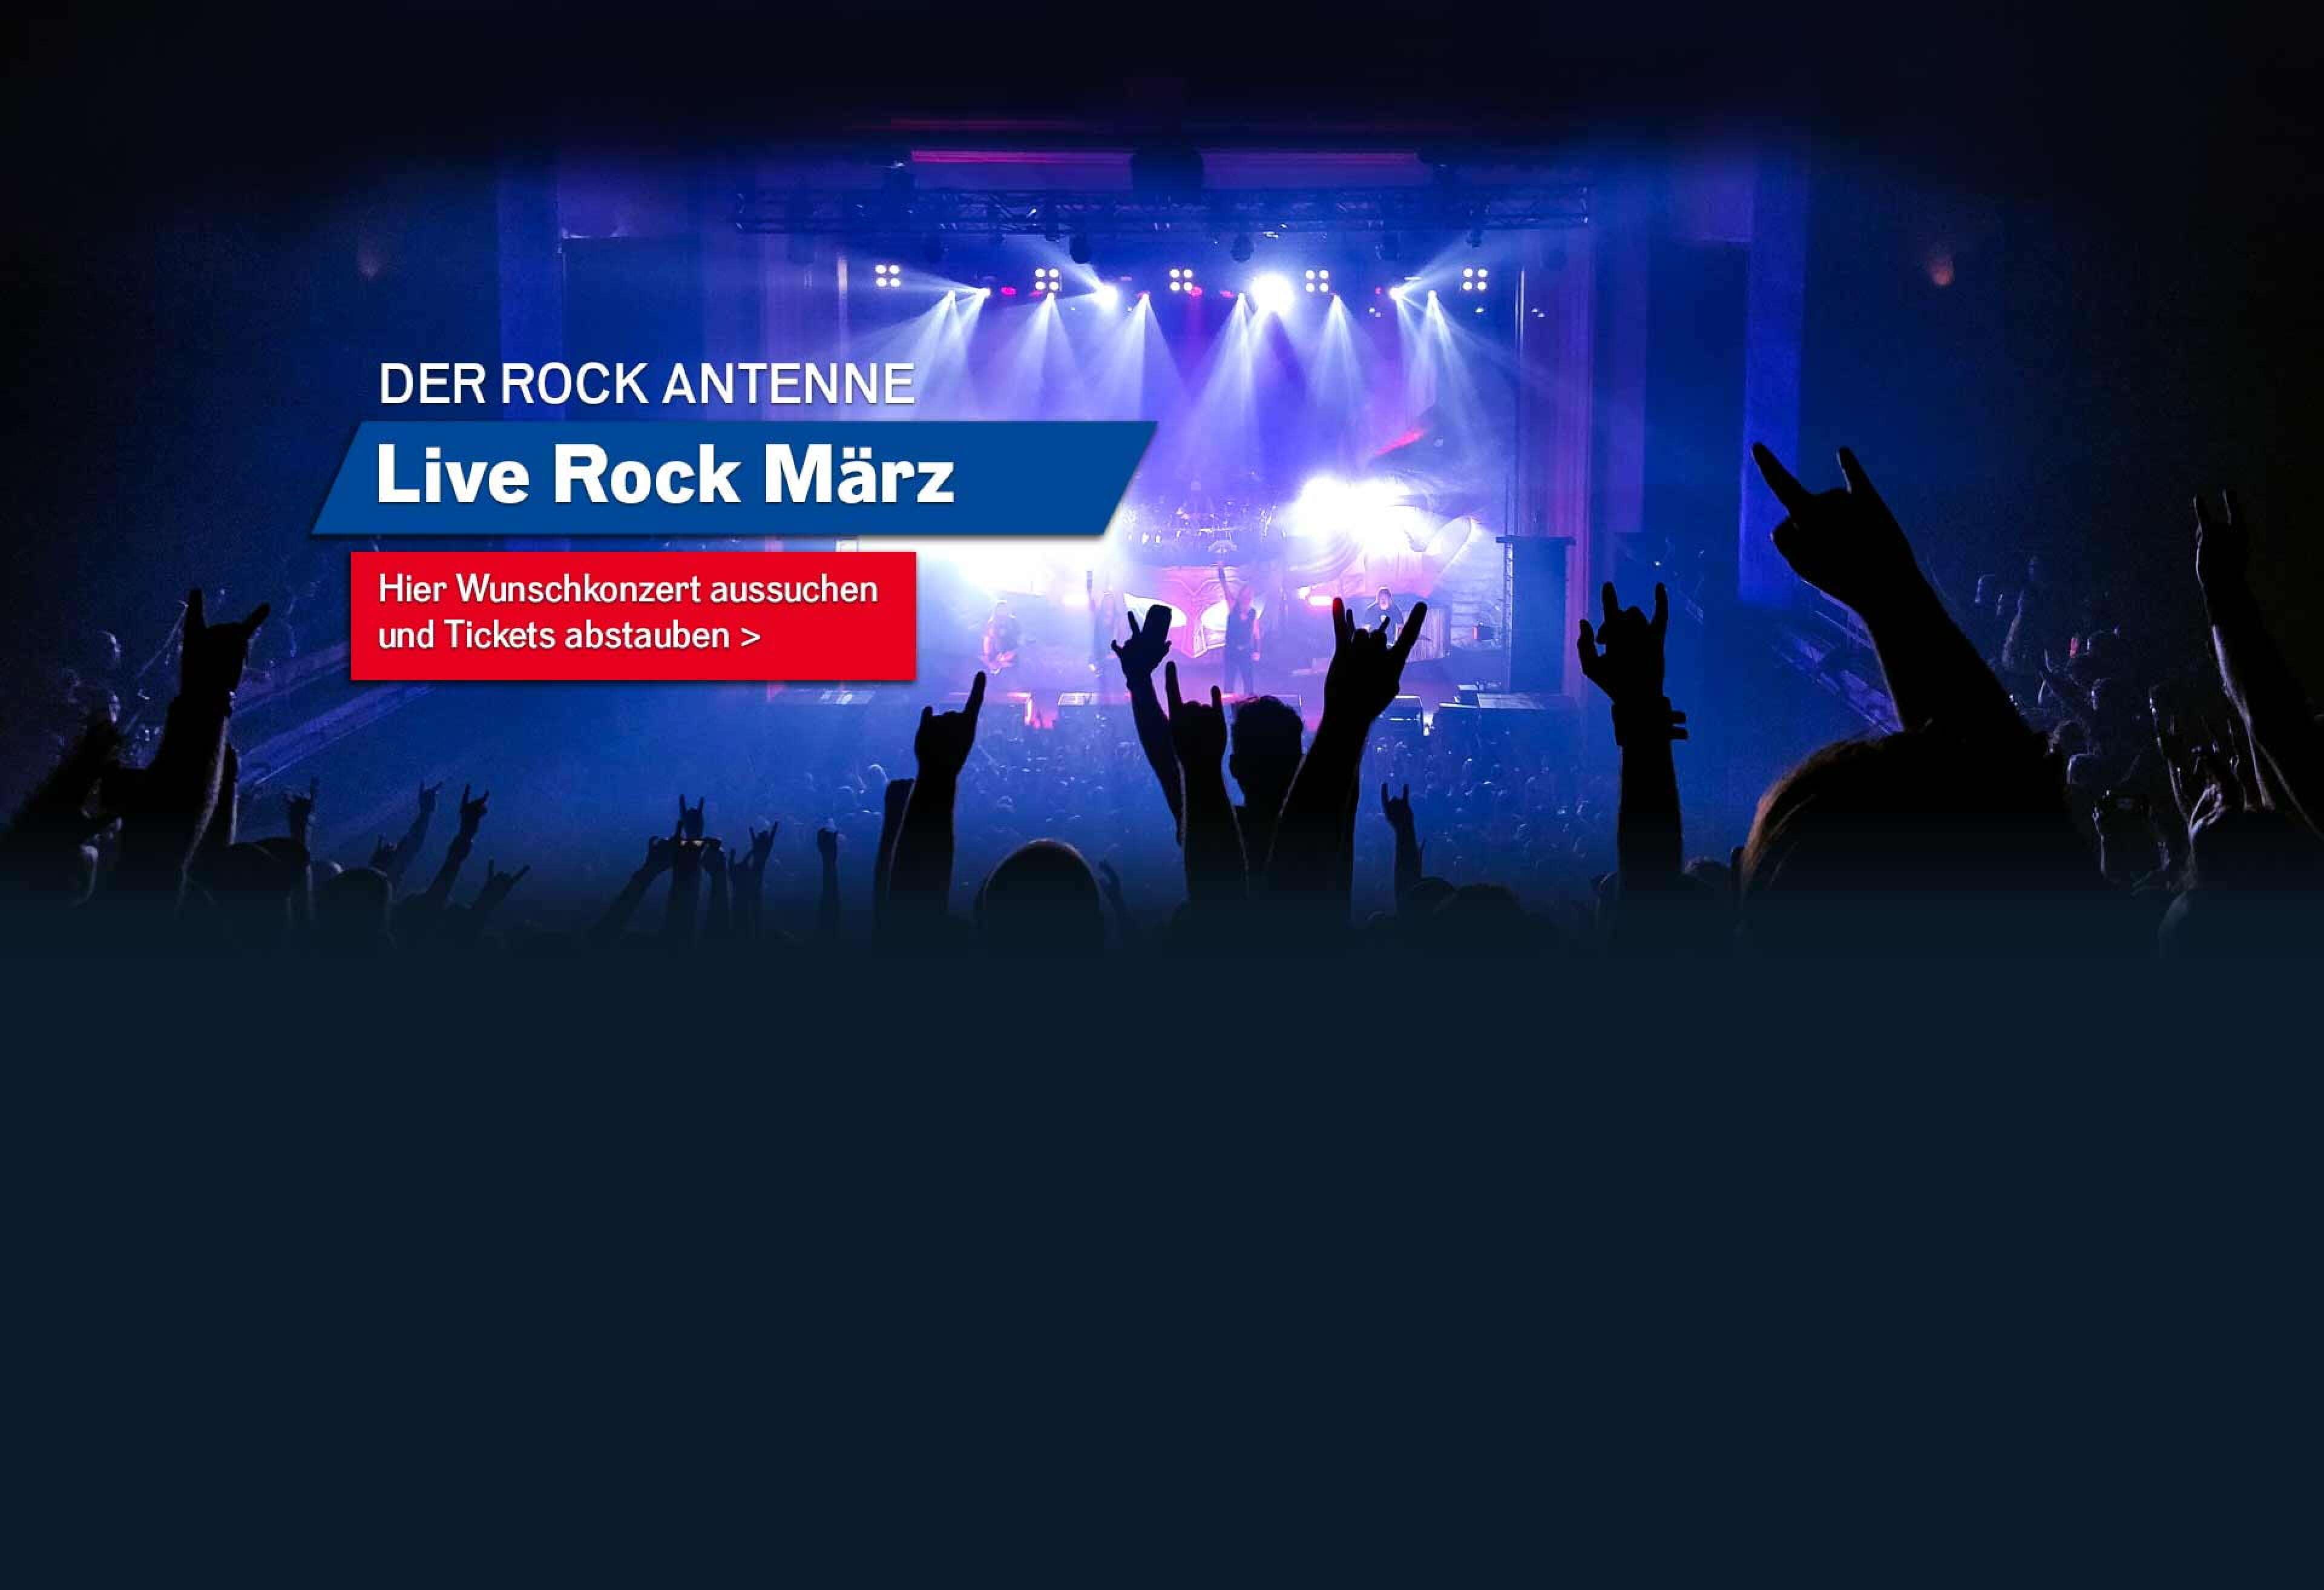 Bild eines Konzert-Publikums mit Blick auf die Bühne mit Aufschrift ROCK ANTENNE Live Rock März - hier Wunschkonzert aussuchen und Tickets abstauben!